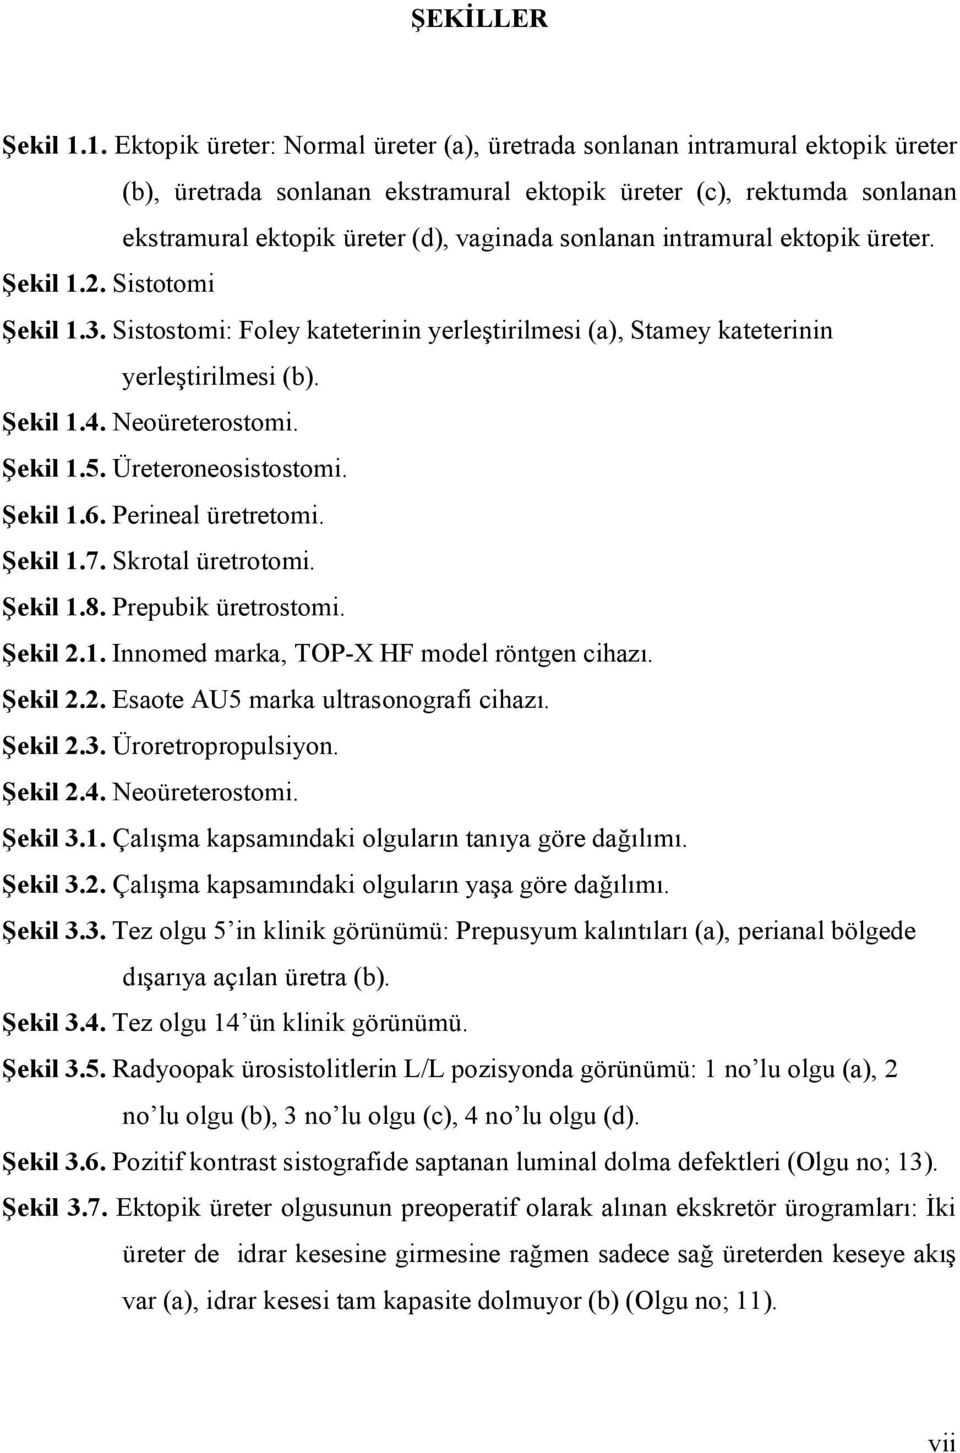 sonlanan intramural ektopik üreter. Şekil 1.2. Sistotomi Şekil 1.3. Sistostomi: Foley kateterinin yerleştirilmesi (a), Stamey kateterinin yerleştirilmesi (b). Şekil 1.4. Neoüreterostomi. Şekil 1.5.